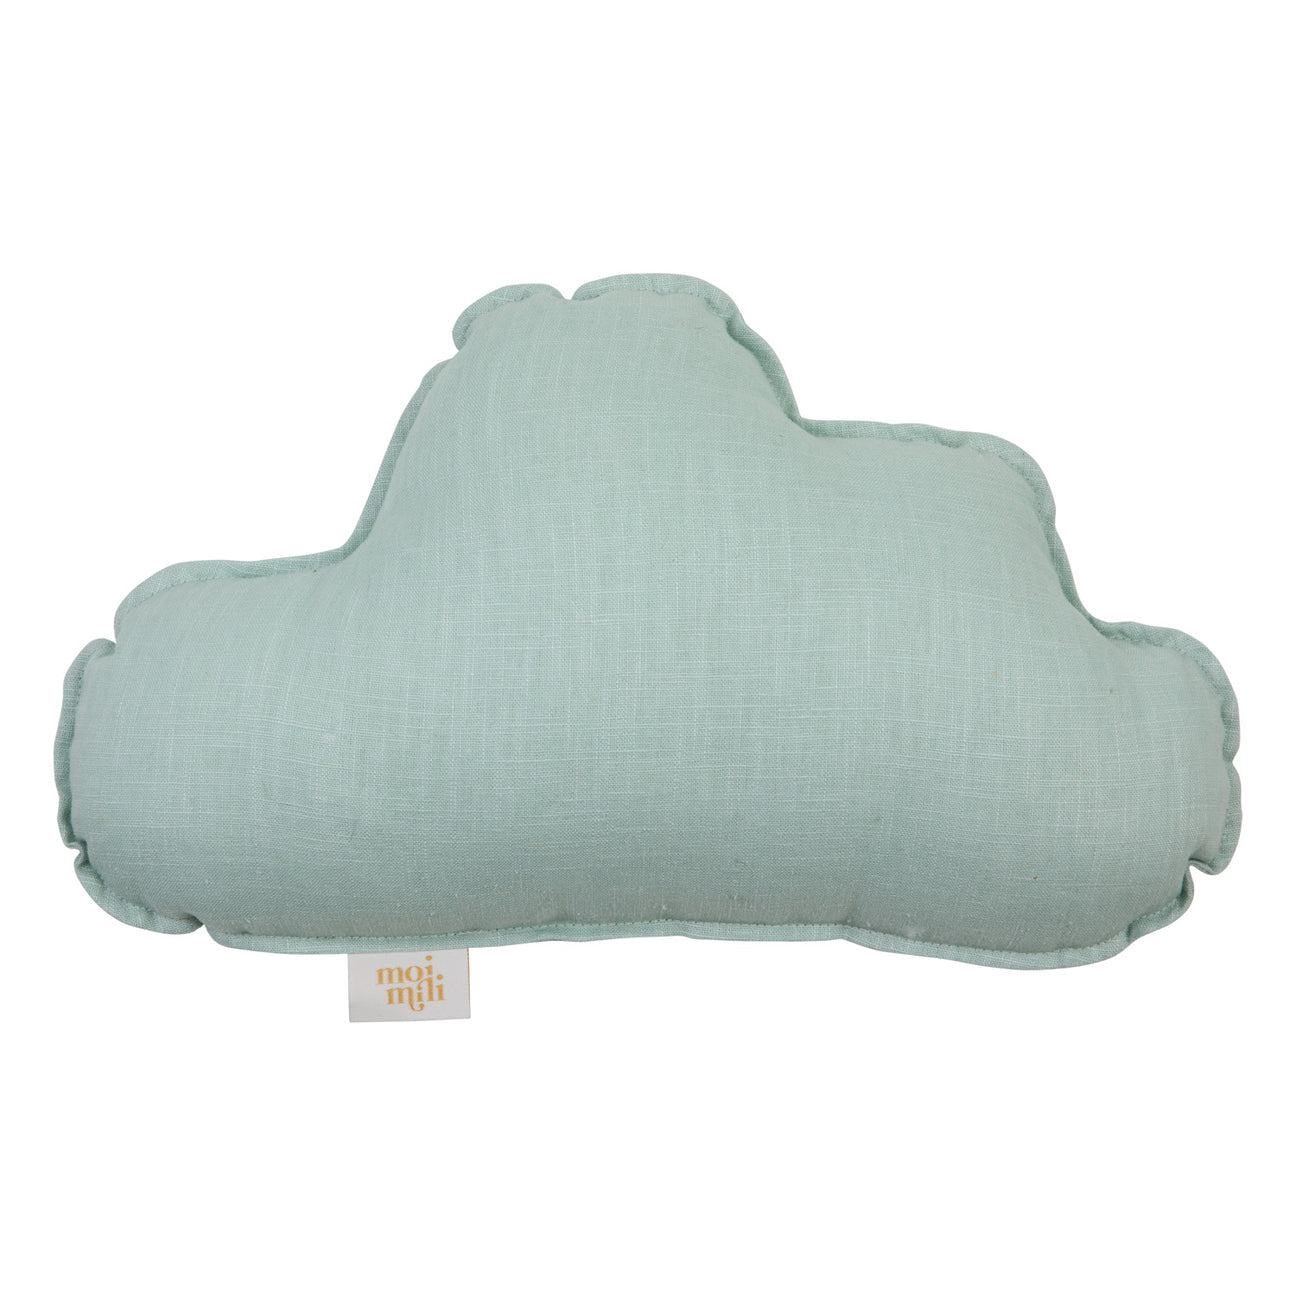 Mint” Linen Cloud Pillow